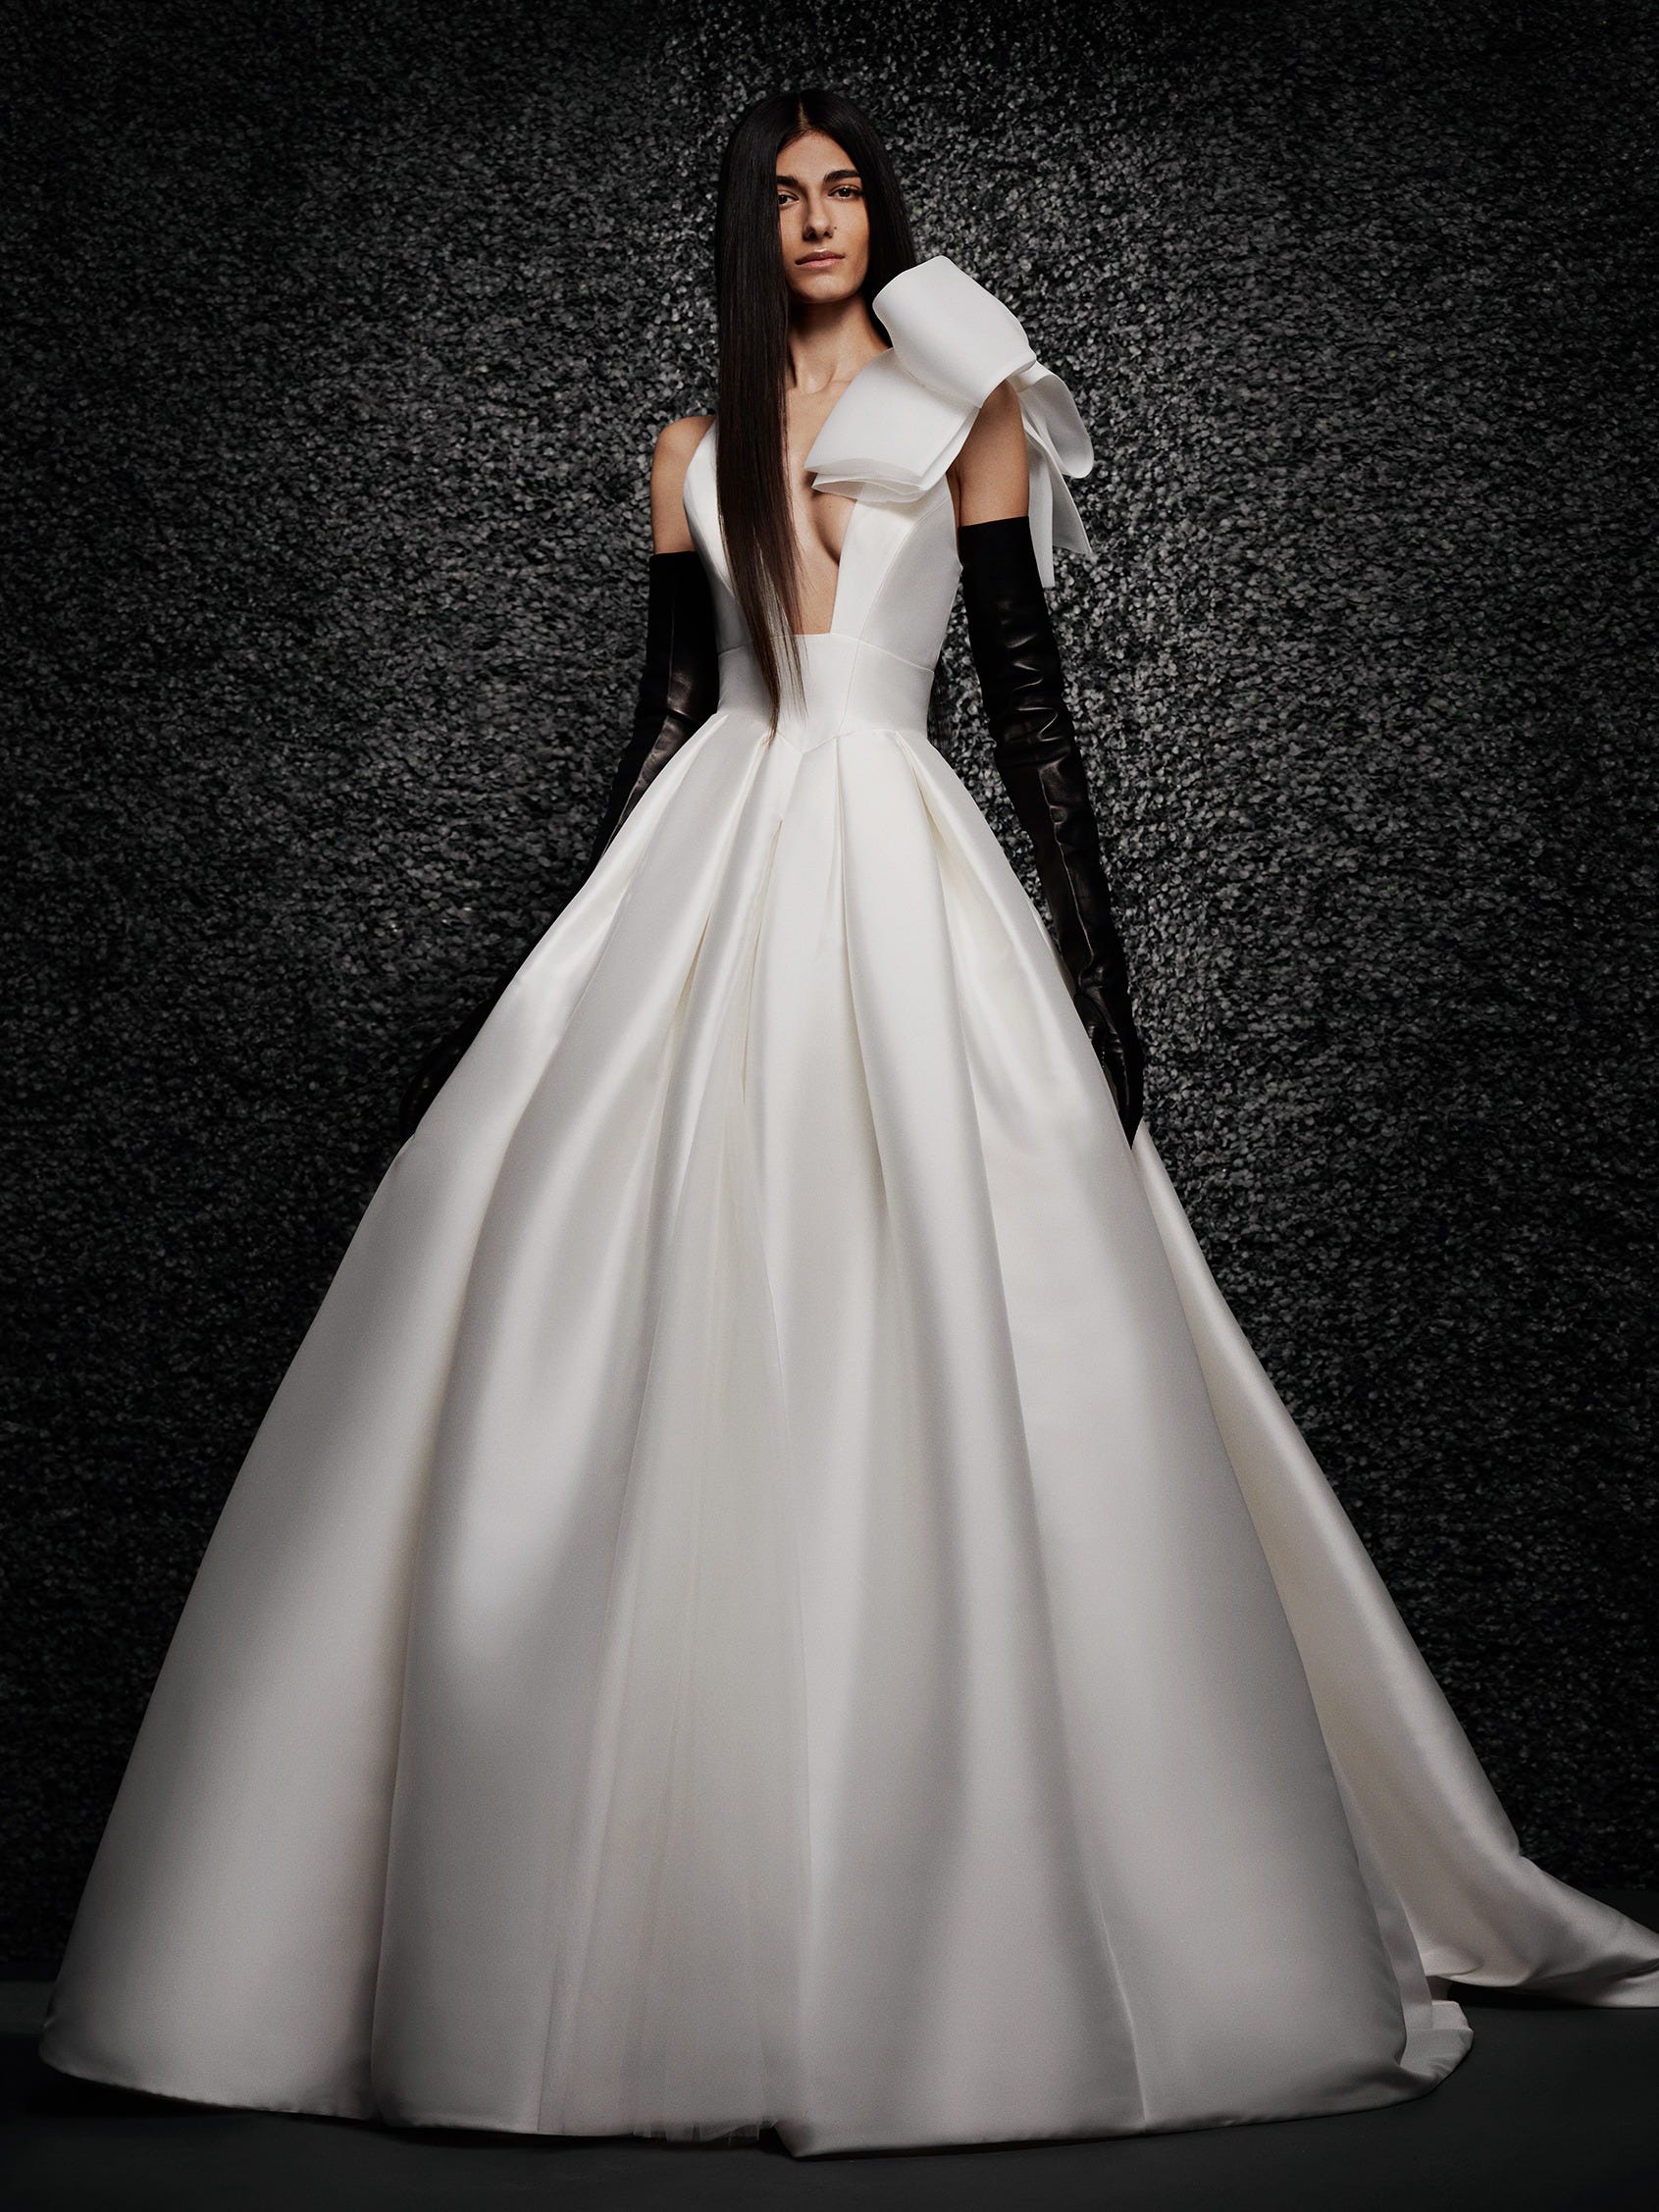 Shop Vera Wang Wedding Dresses in Los Angeles, CA | Karoza Bridal Inc